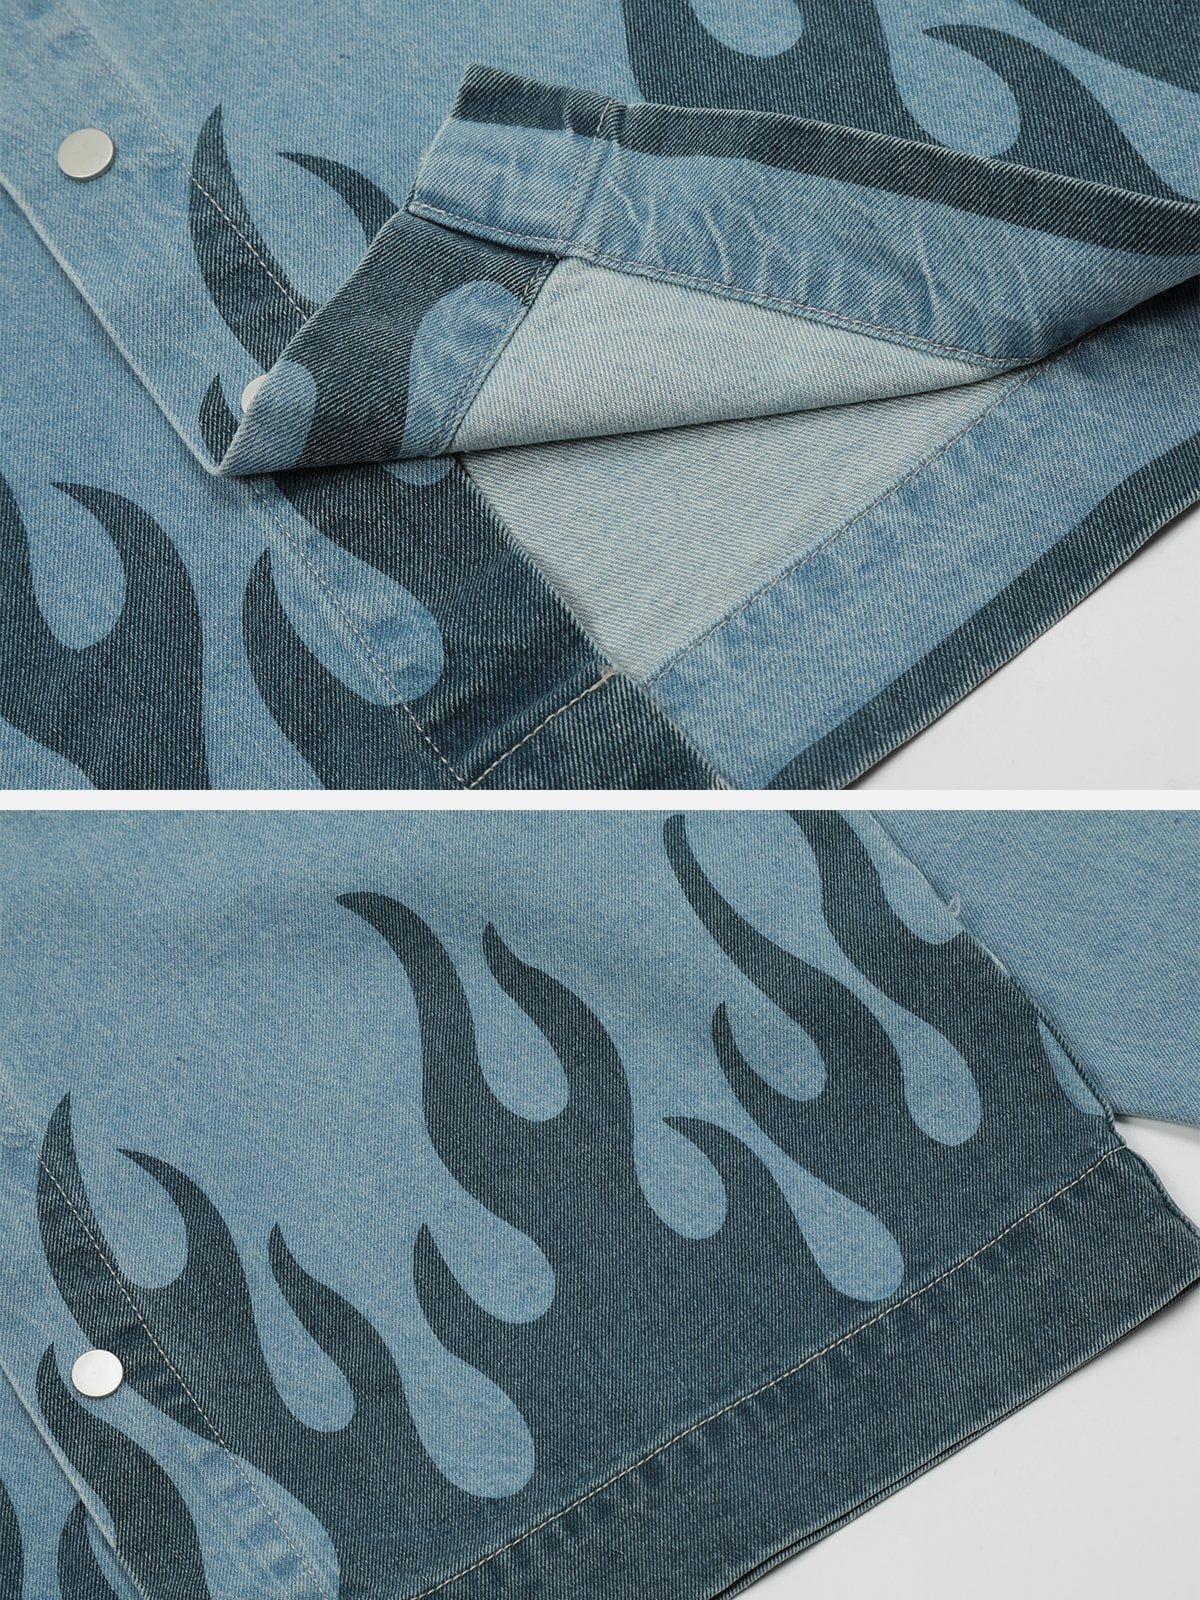 Majesda® - Flame Print Denim Jacket outfit ideas, streetwear fashion - majesda.com